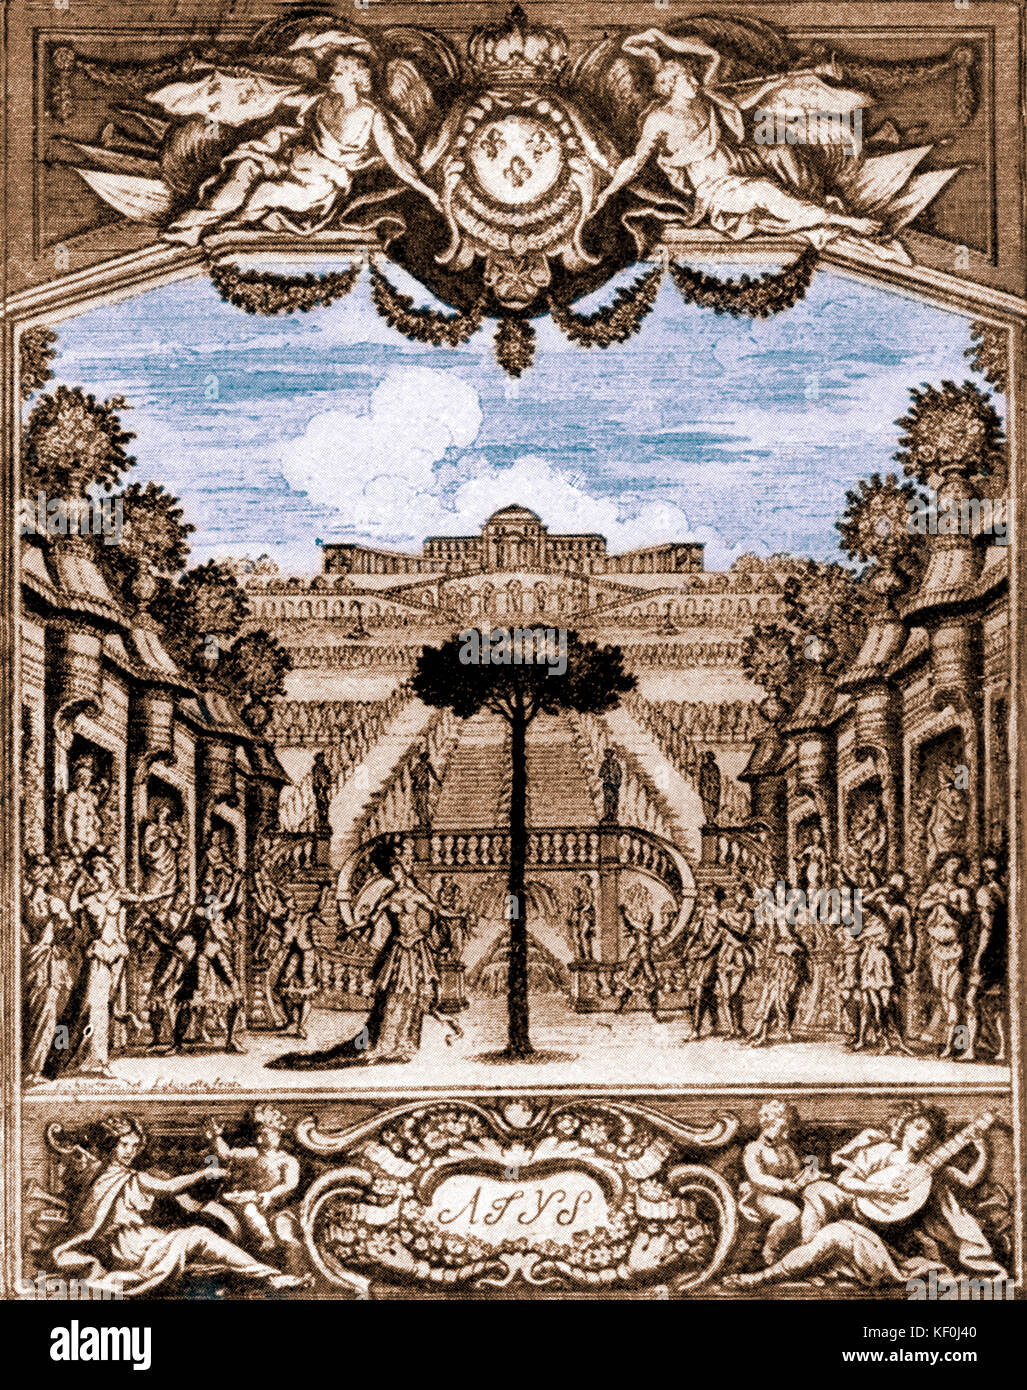 Par Atys Jean-Baptiste Lully. Titlepage à l'Opéra 1676. J-BL compositeur italien Français 28 novembre 1632 - 22 mars 1687. Version teintée. Banque D'Images